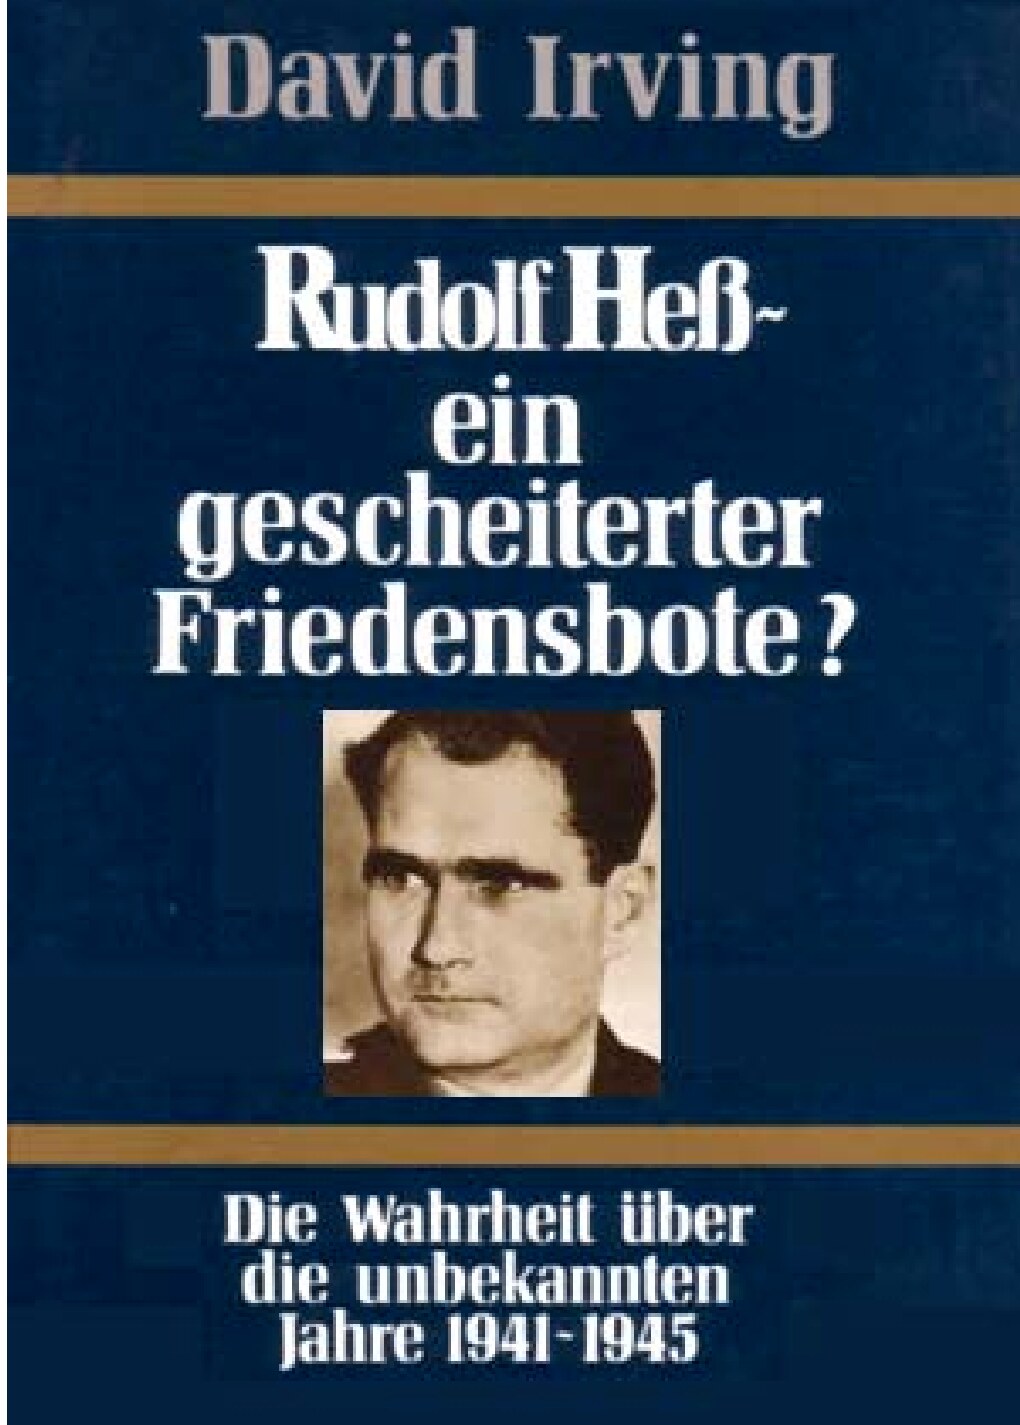 Rudolf Heß - ein gescheiterter Friedensbote?